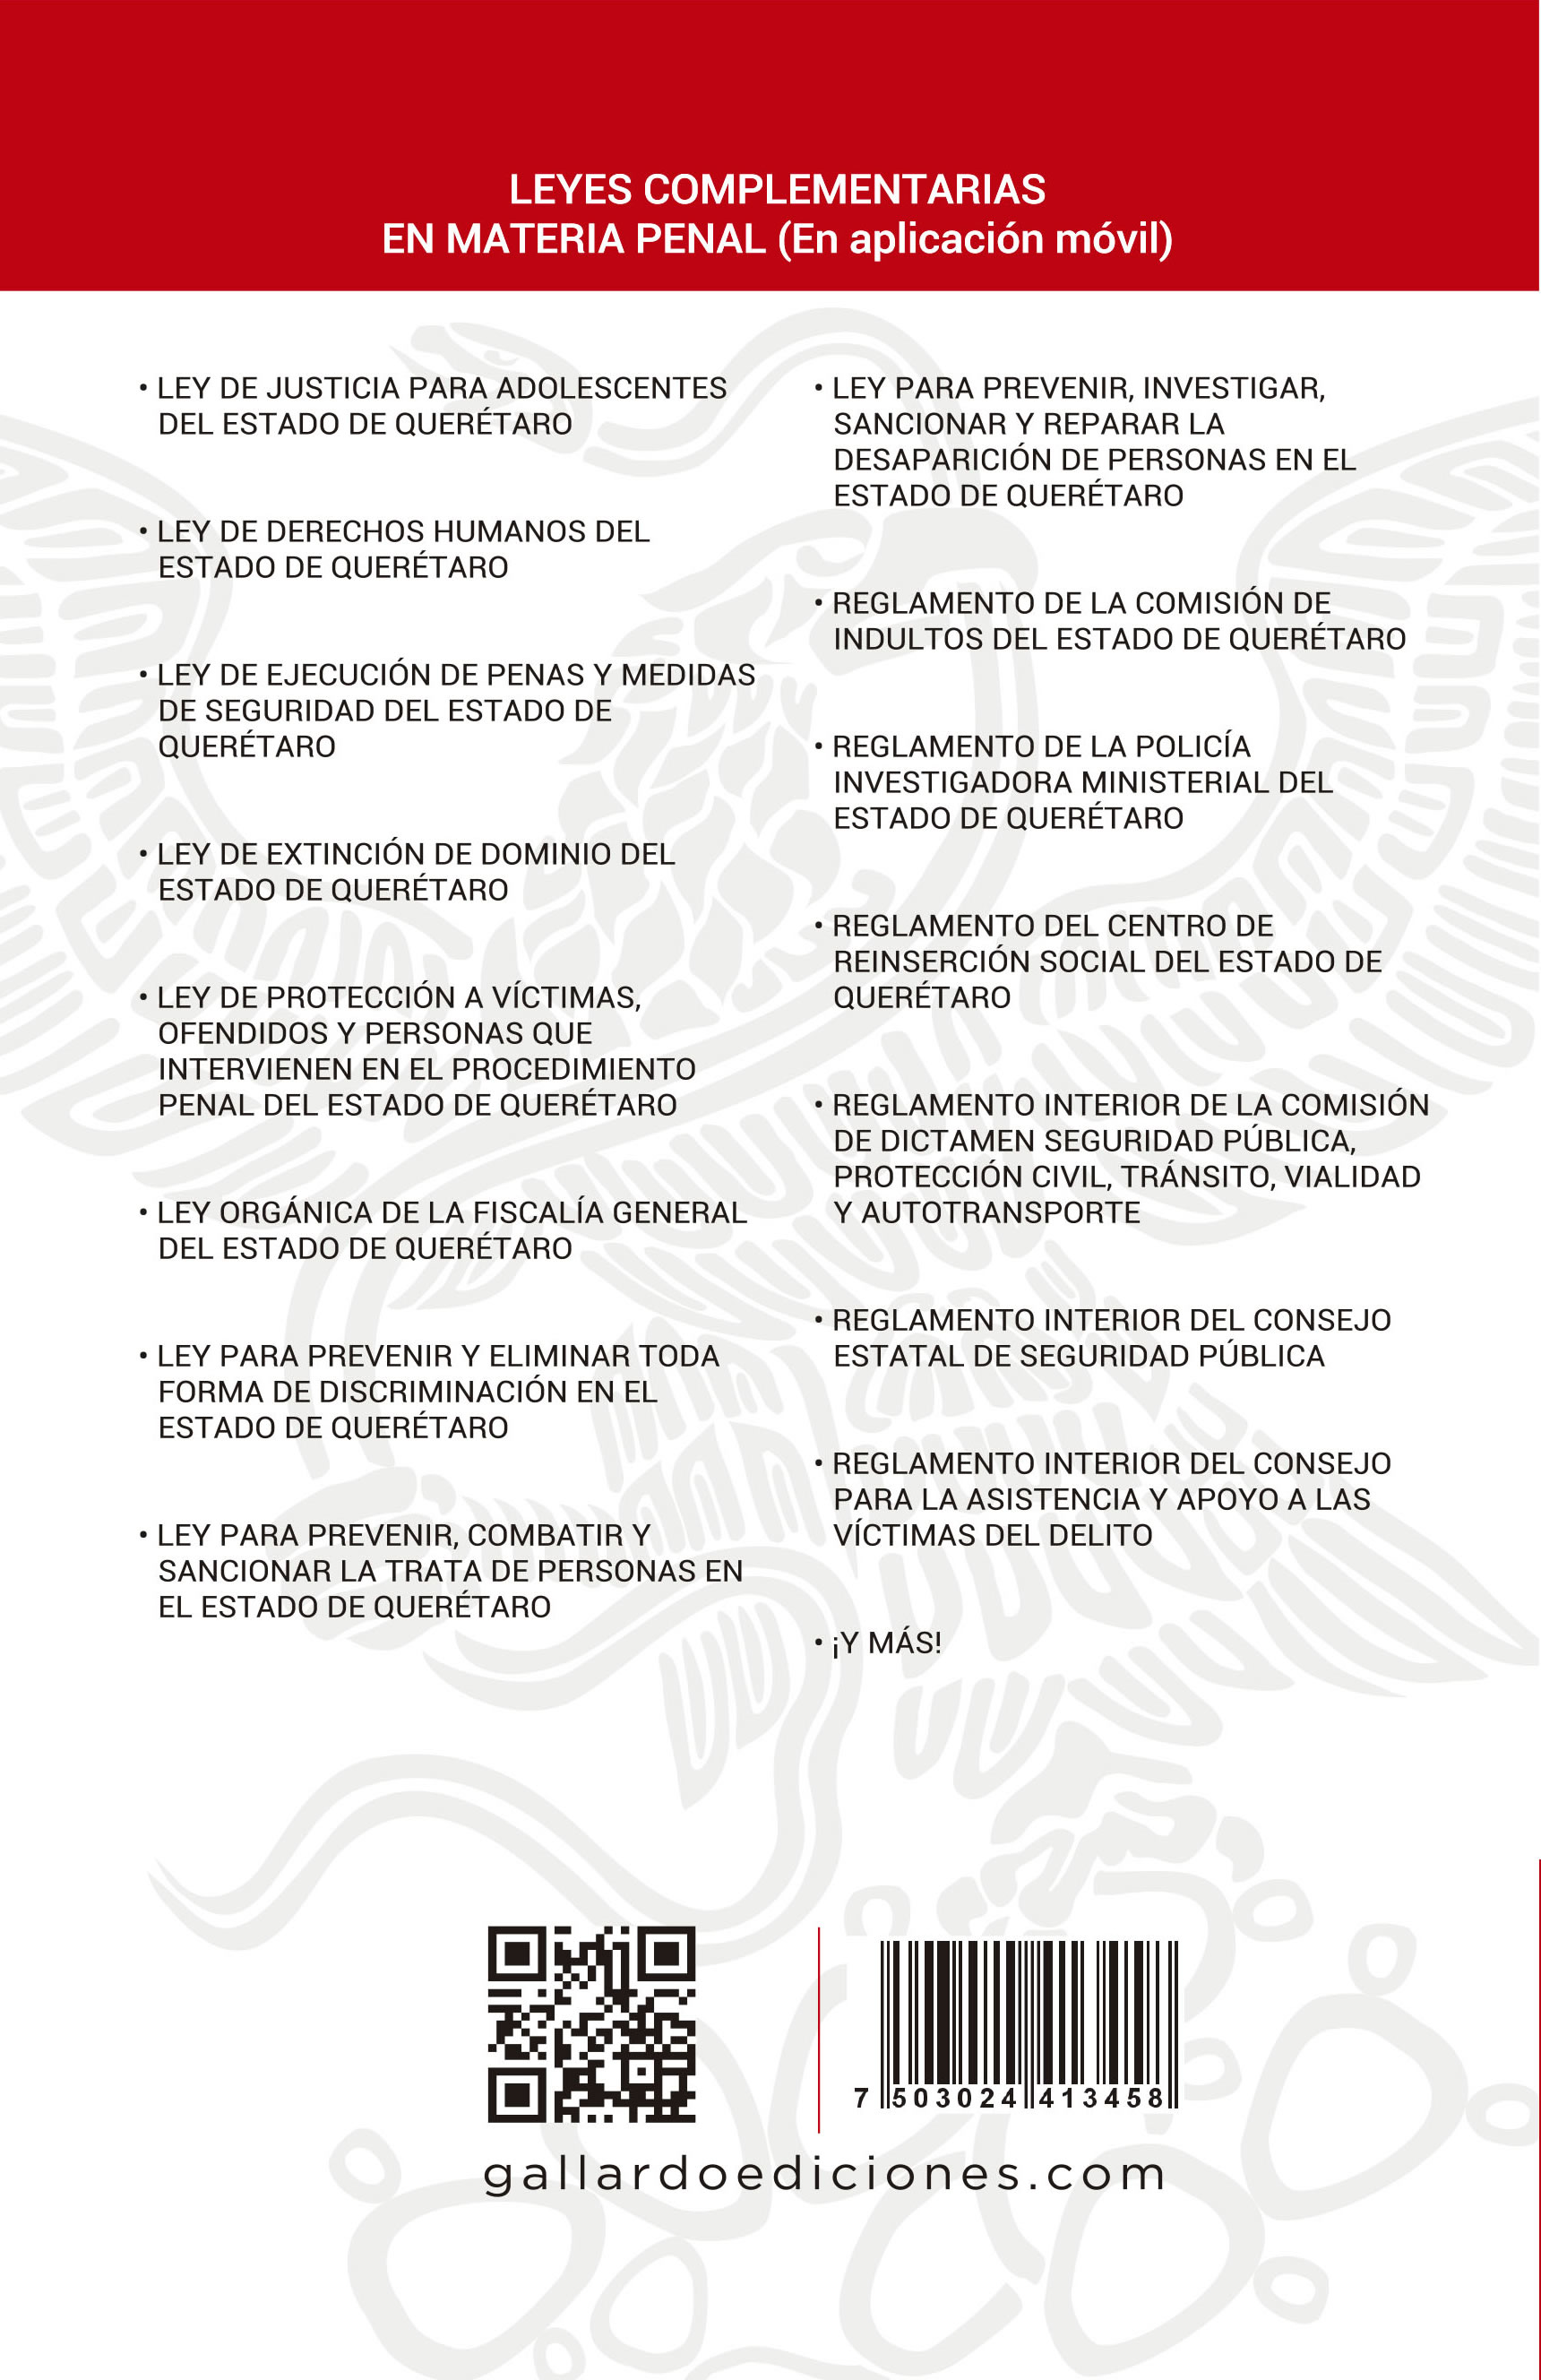 Código Penal de Querétaro Legislación 2019 Gallardo